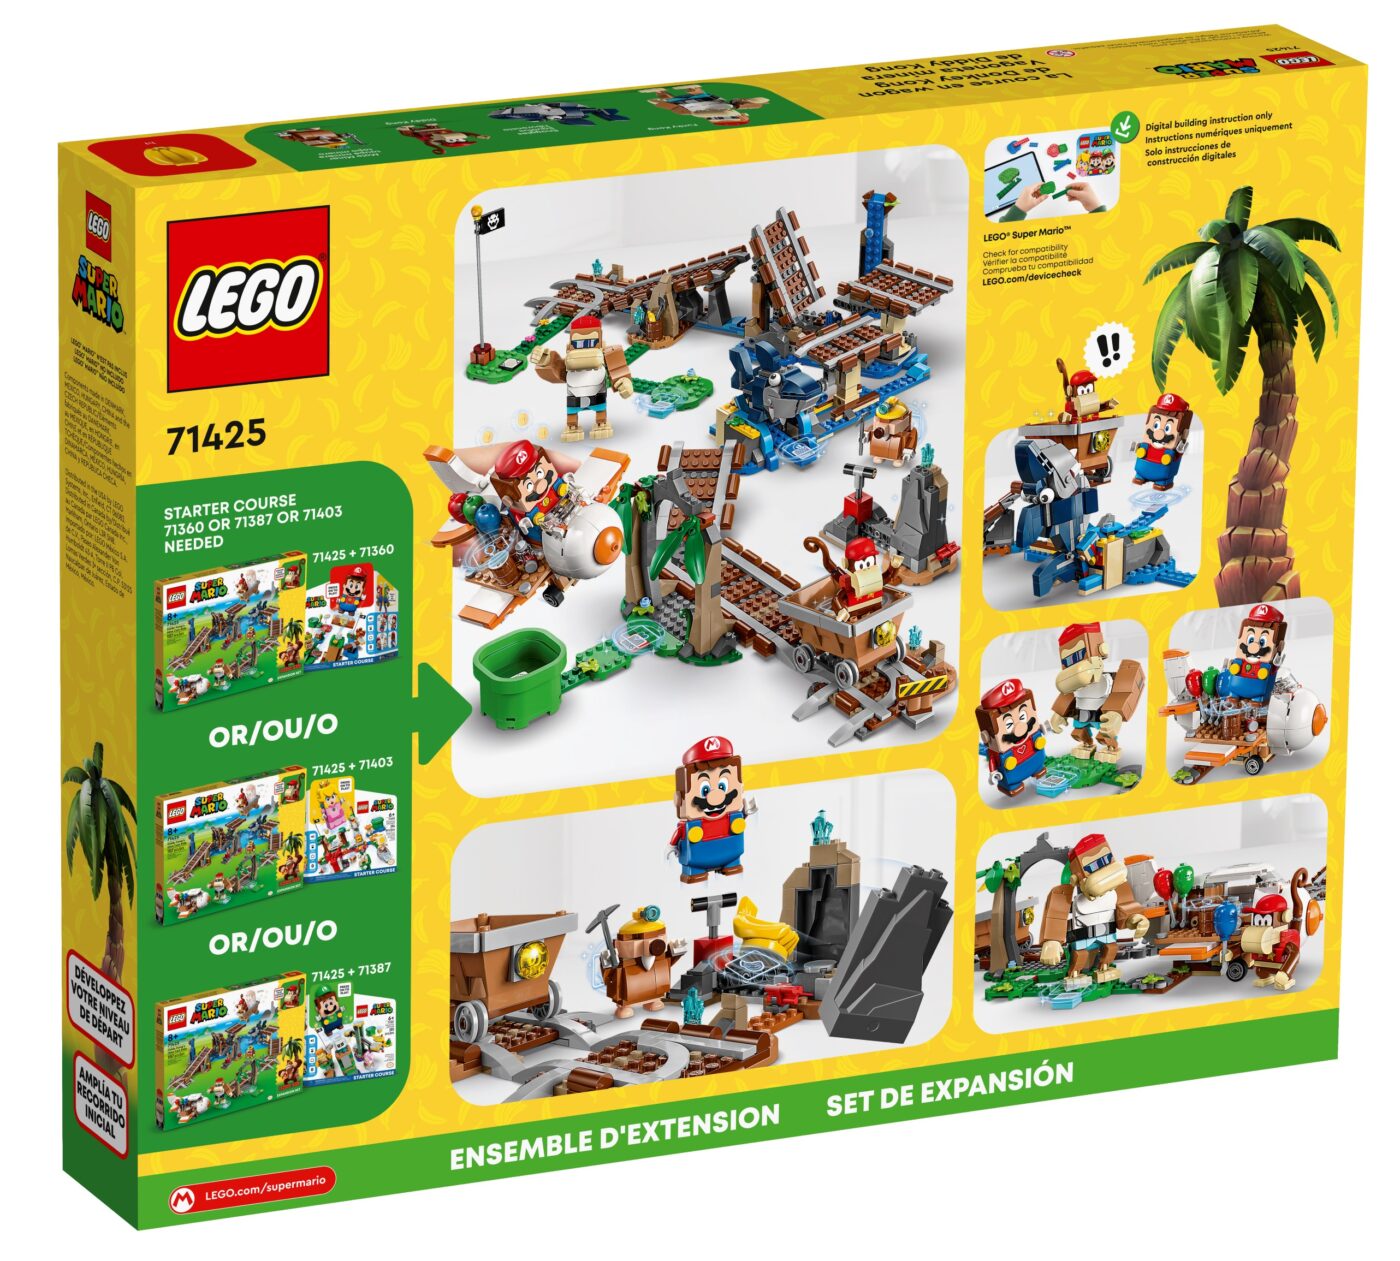 Complete Look At Lego Super Mario Donkey Kong Sets! - Jay'S Brick Blog